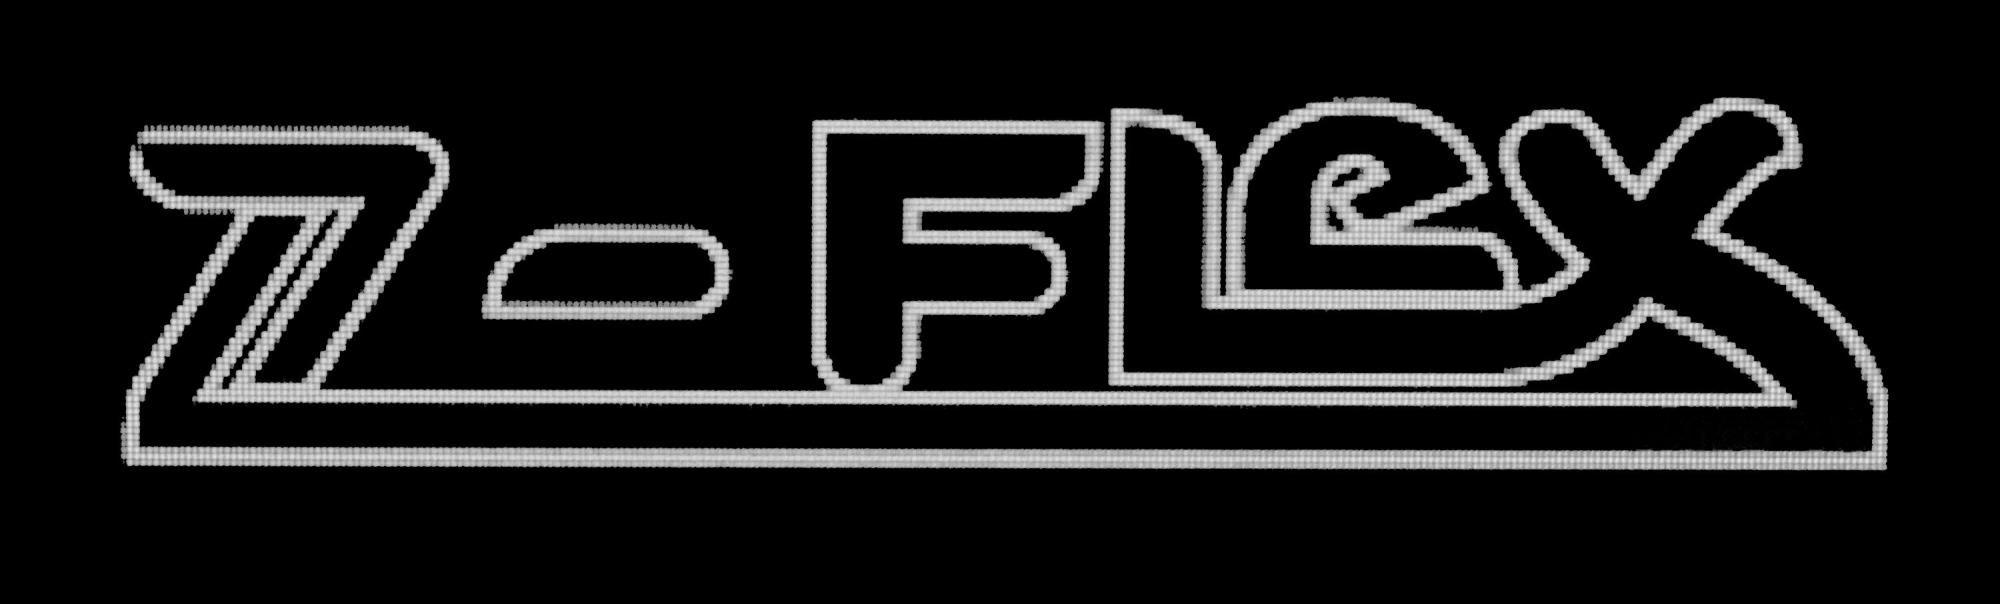 Z-Flex Logo - Z-Flex Logos